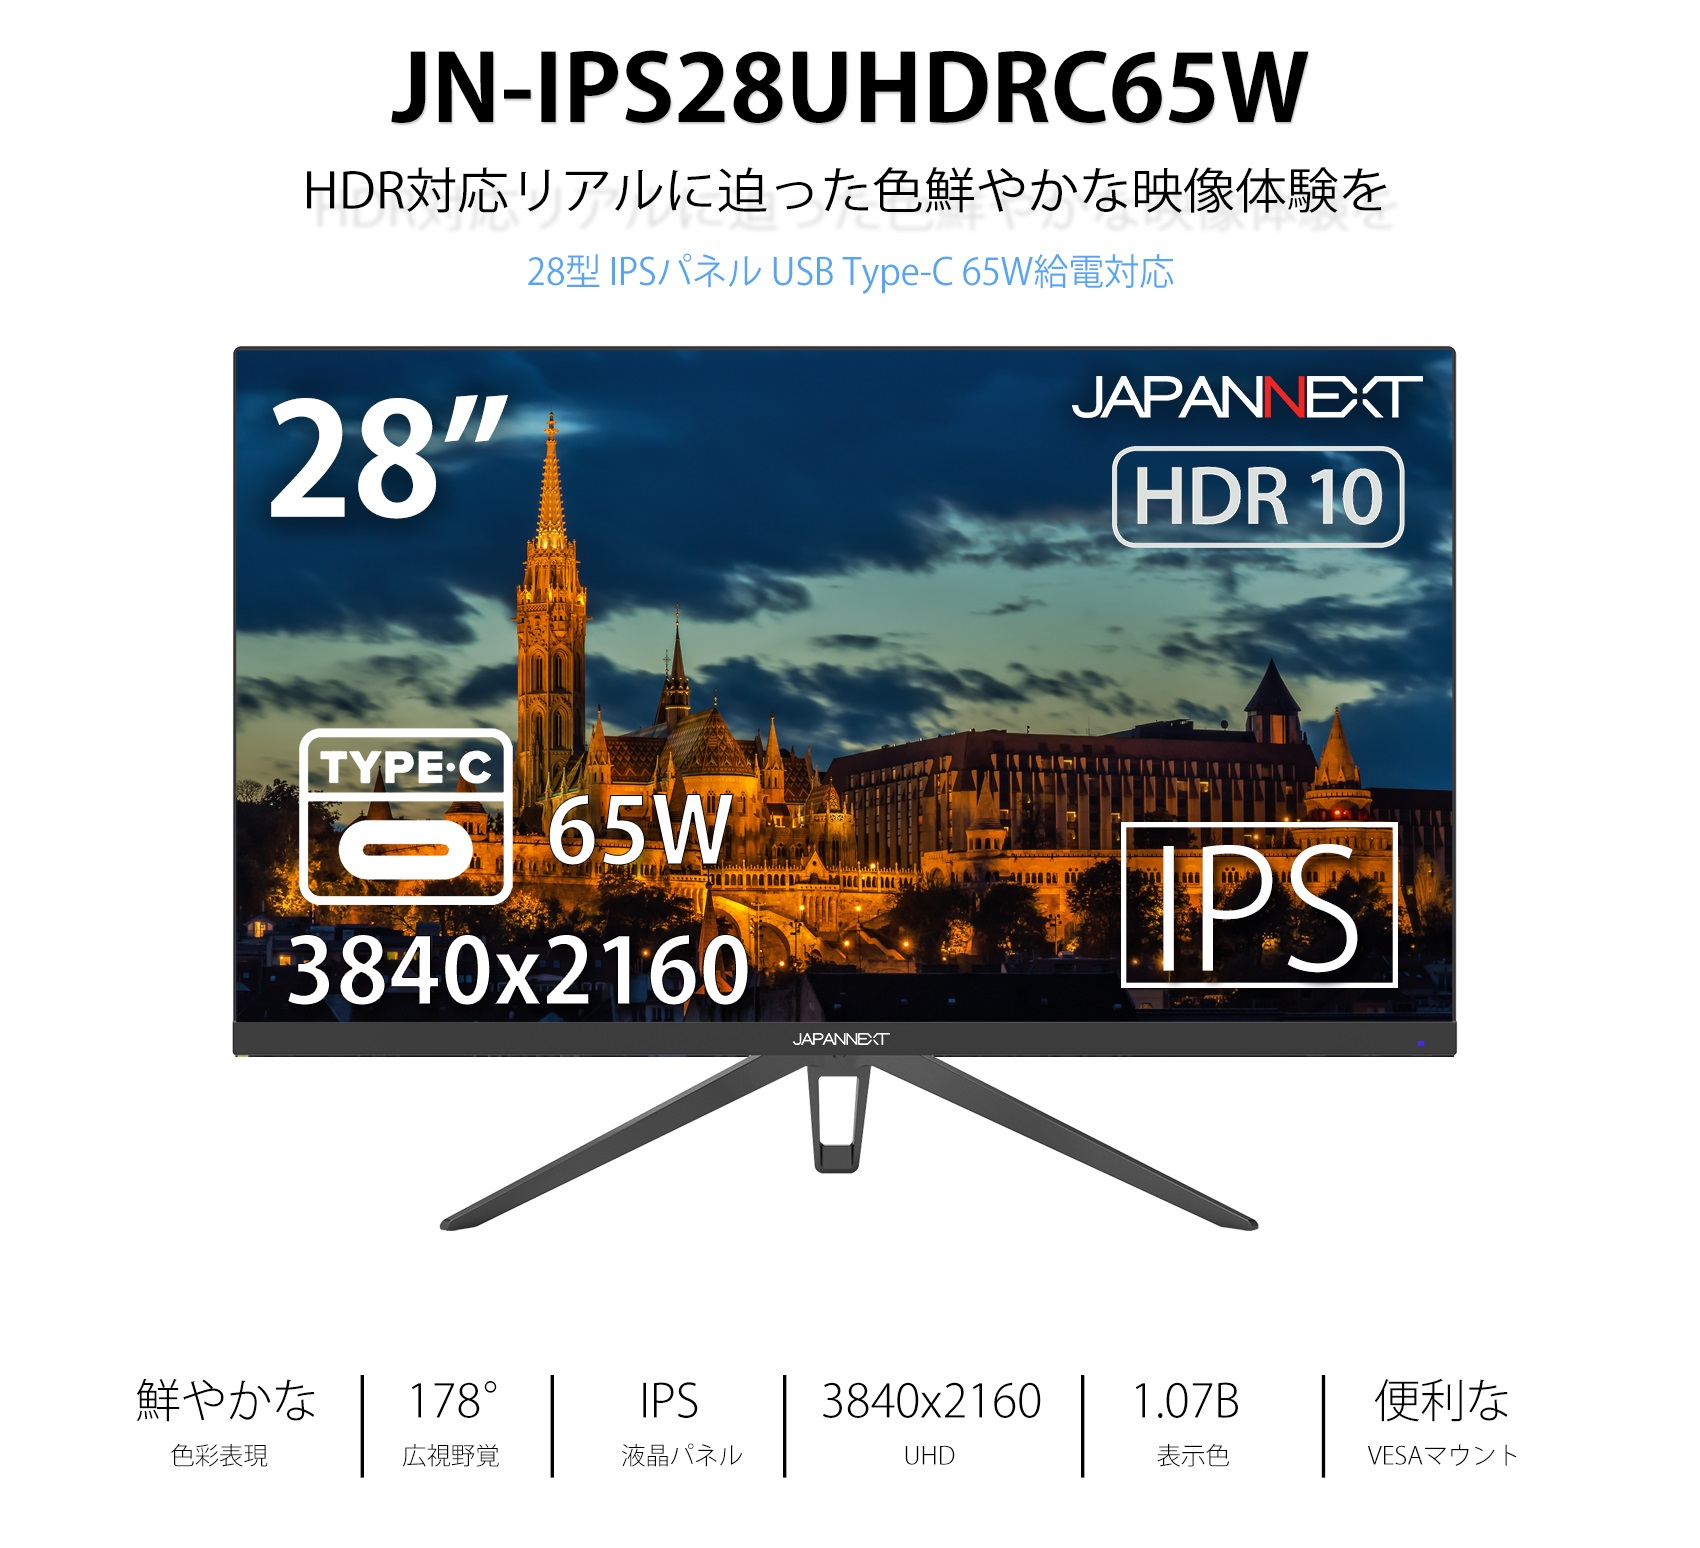 JAPANNEXT 「JN-IPS28UHDRC65W」<br>28型IPS液晶4K液晶モニター<br>65W 